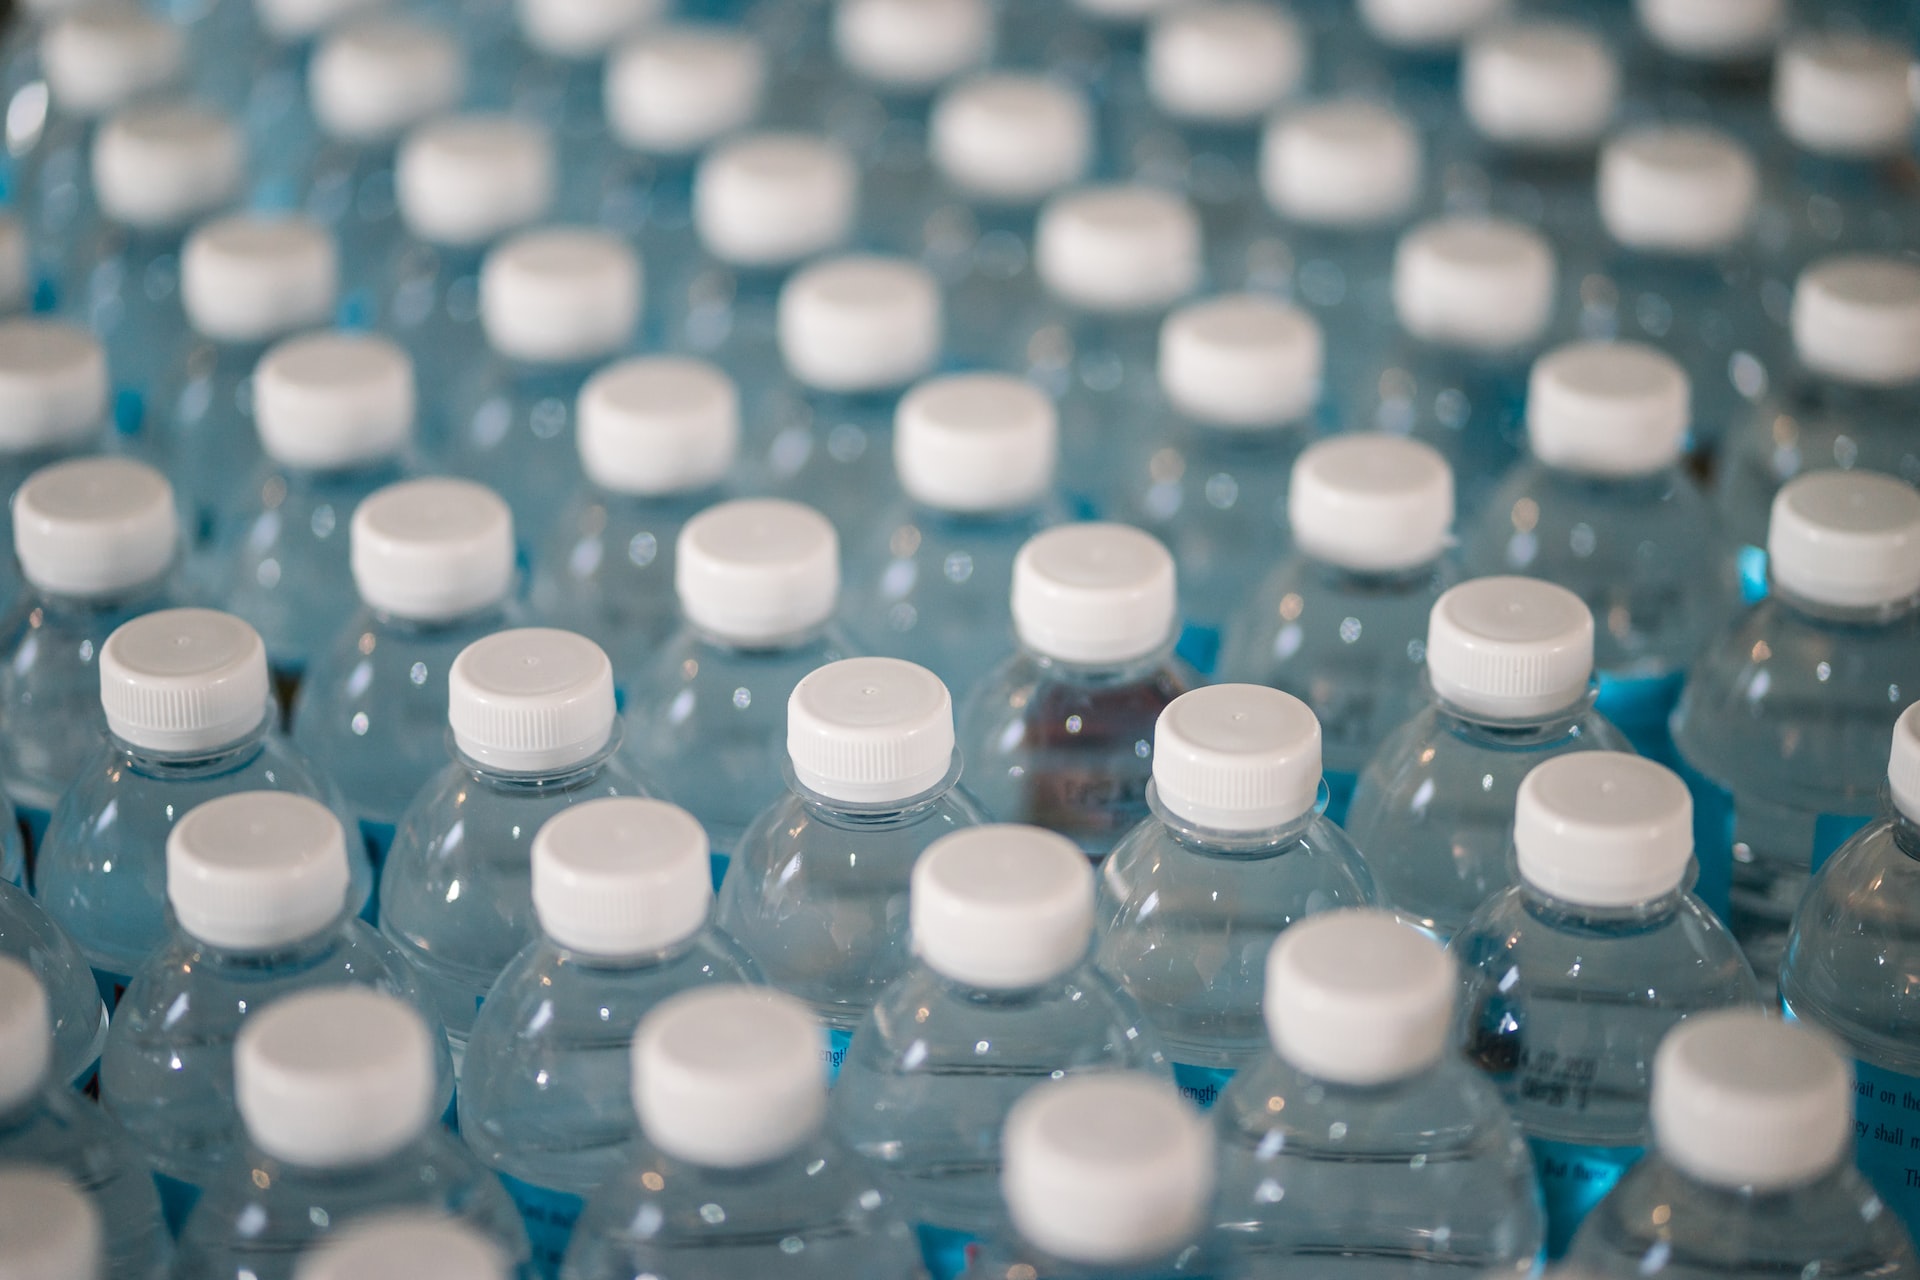 Es seguro reutilizar las botellas de agua? - BBC News Mundo